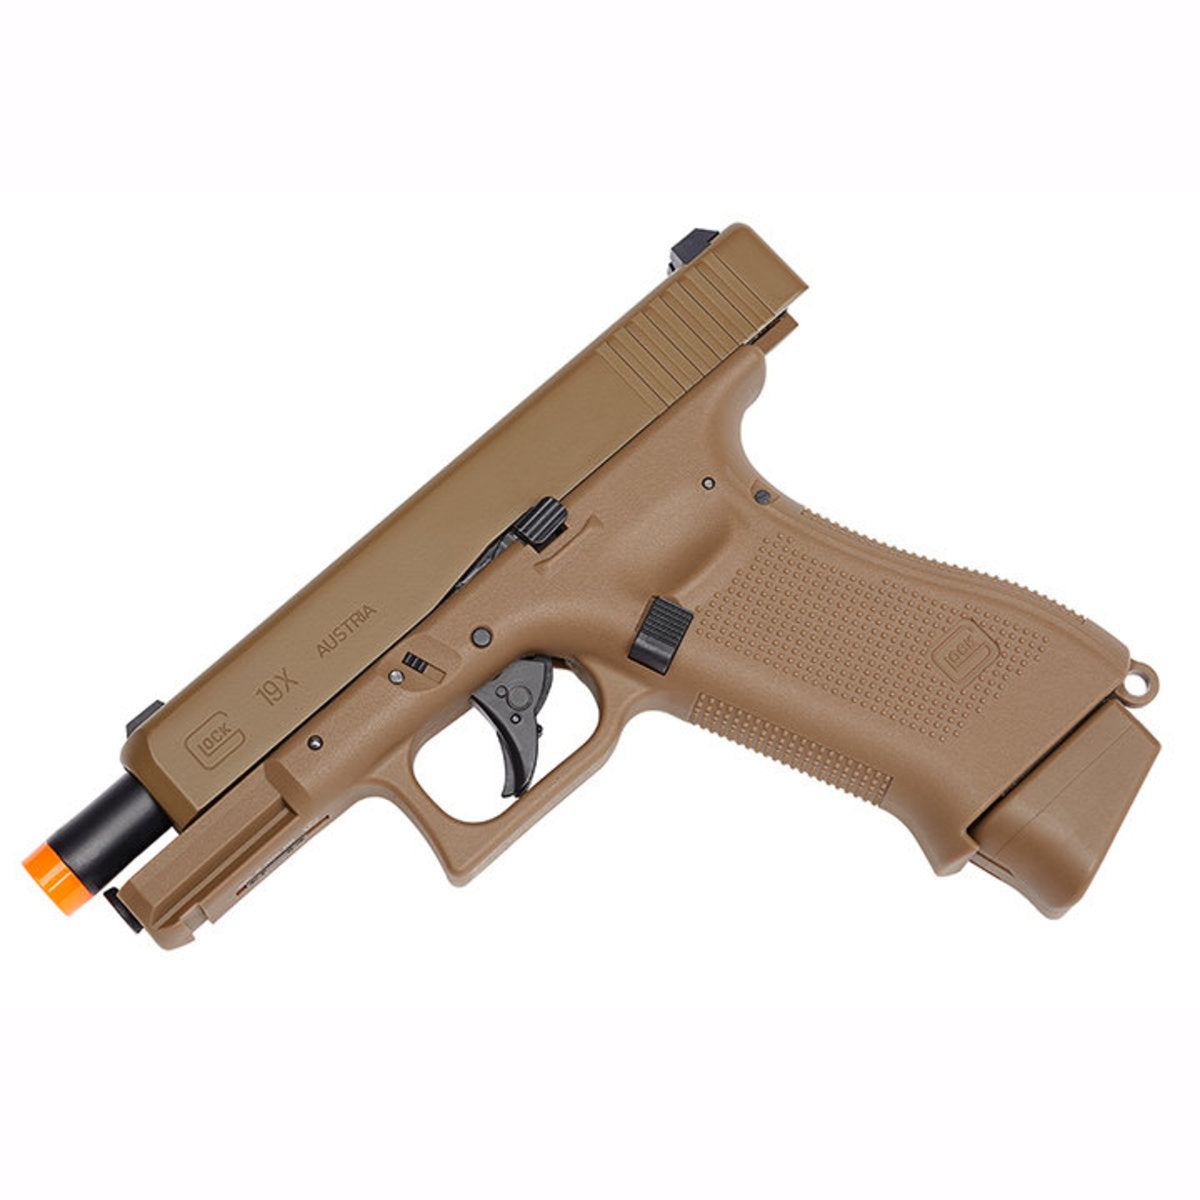 Umarex GLOCK G17 Gen5 C02 (HALF) Blowback Airsoft Pistol – Sports